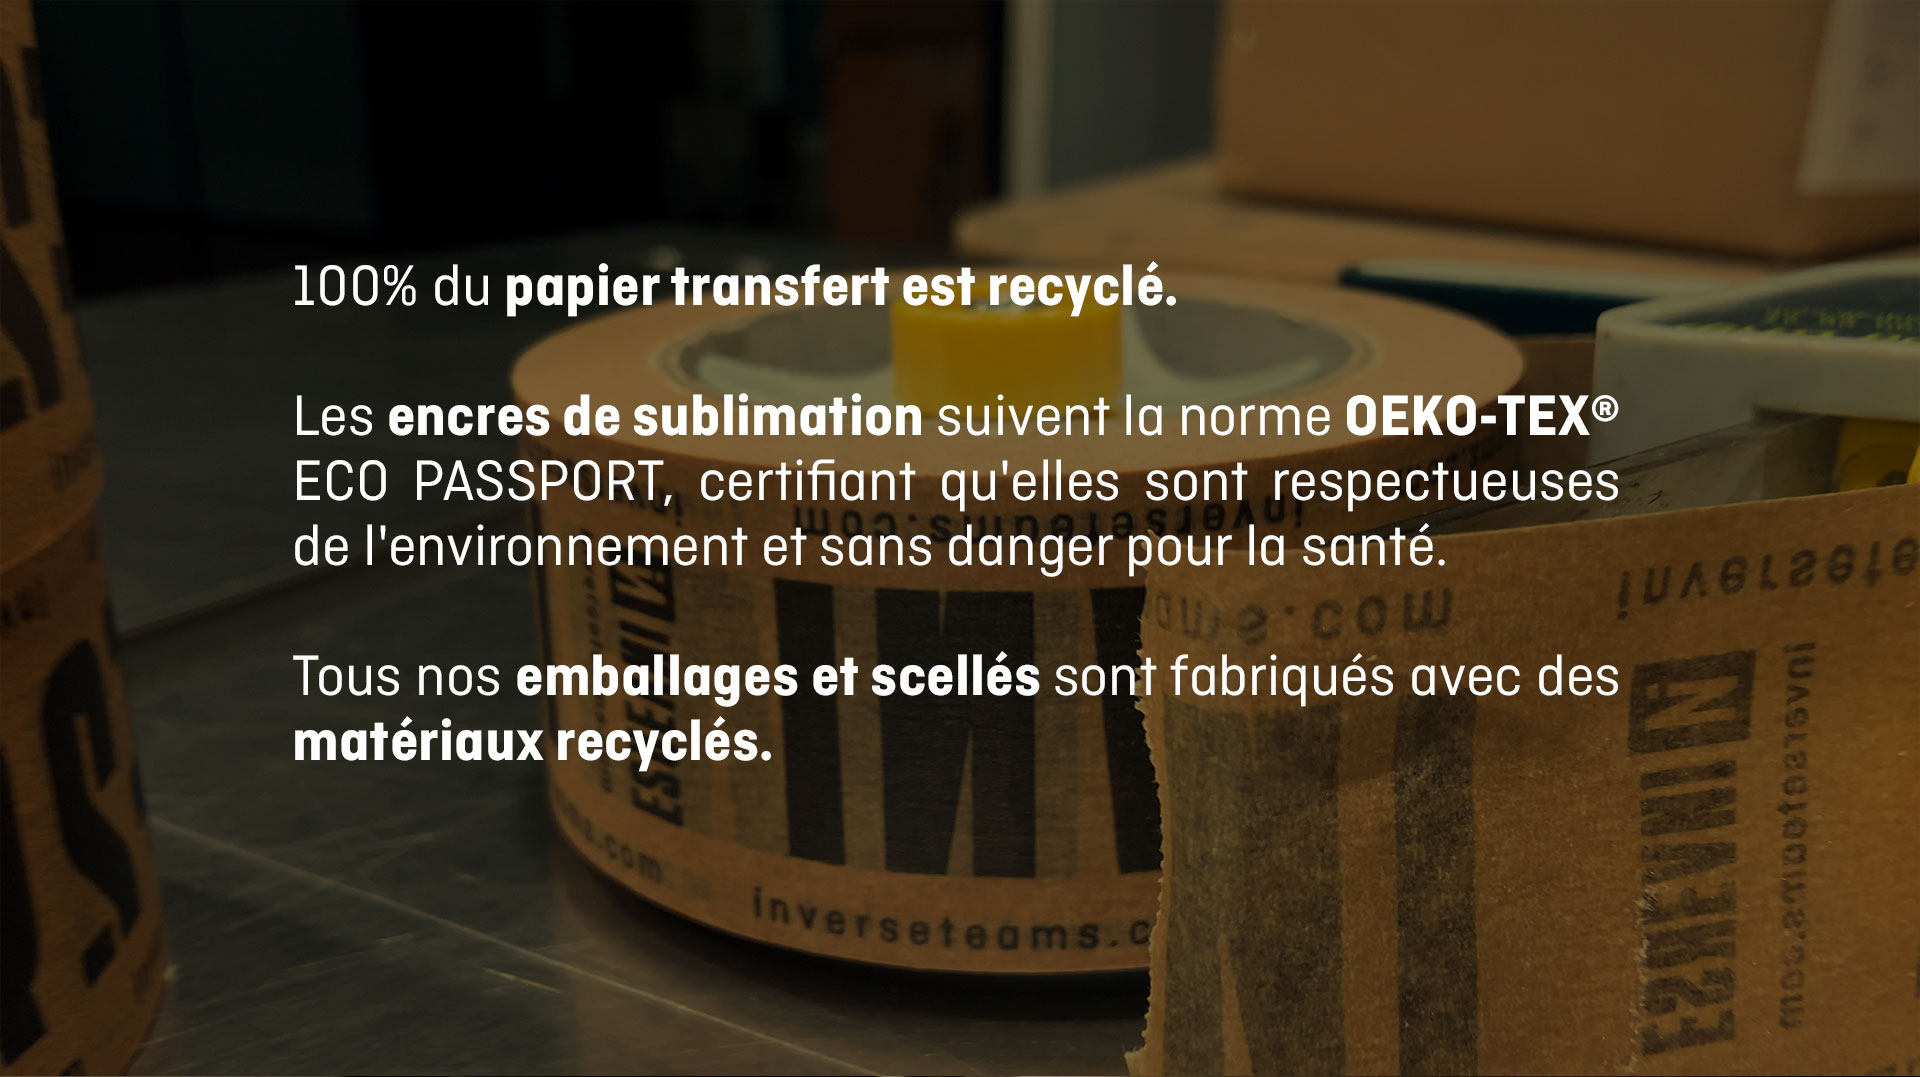 Papier transfert est recyclé. Tous nos emballages et scellés sont fabriqués avec des matériaux recyclés.